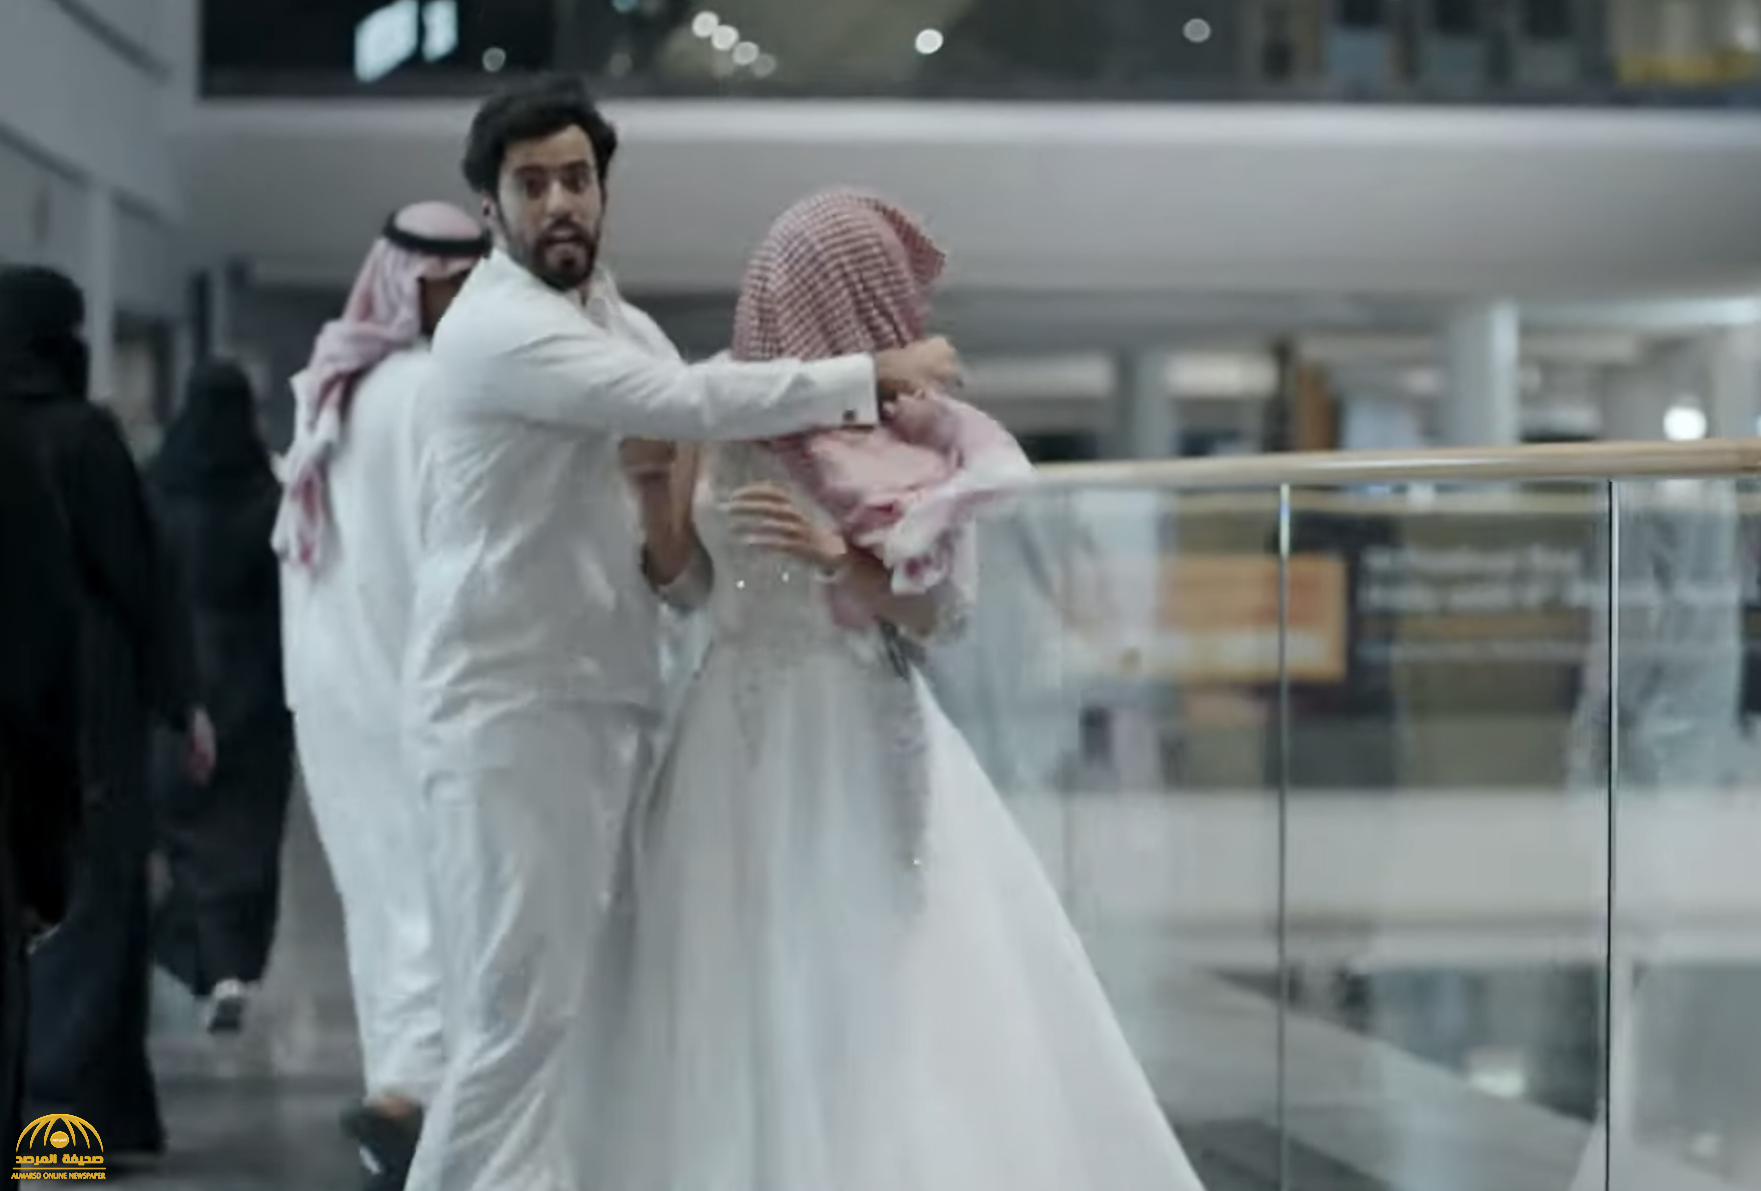 شاهد: أول لقطات من المسلسل السعودي الجديد المثير "اختطاف"